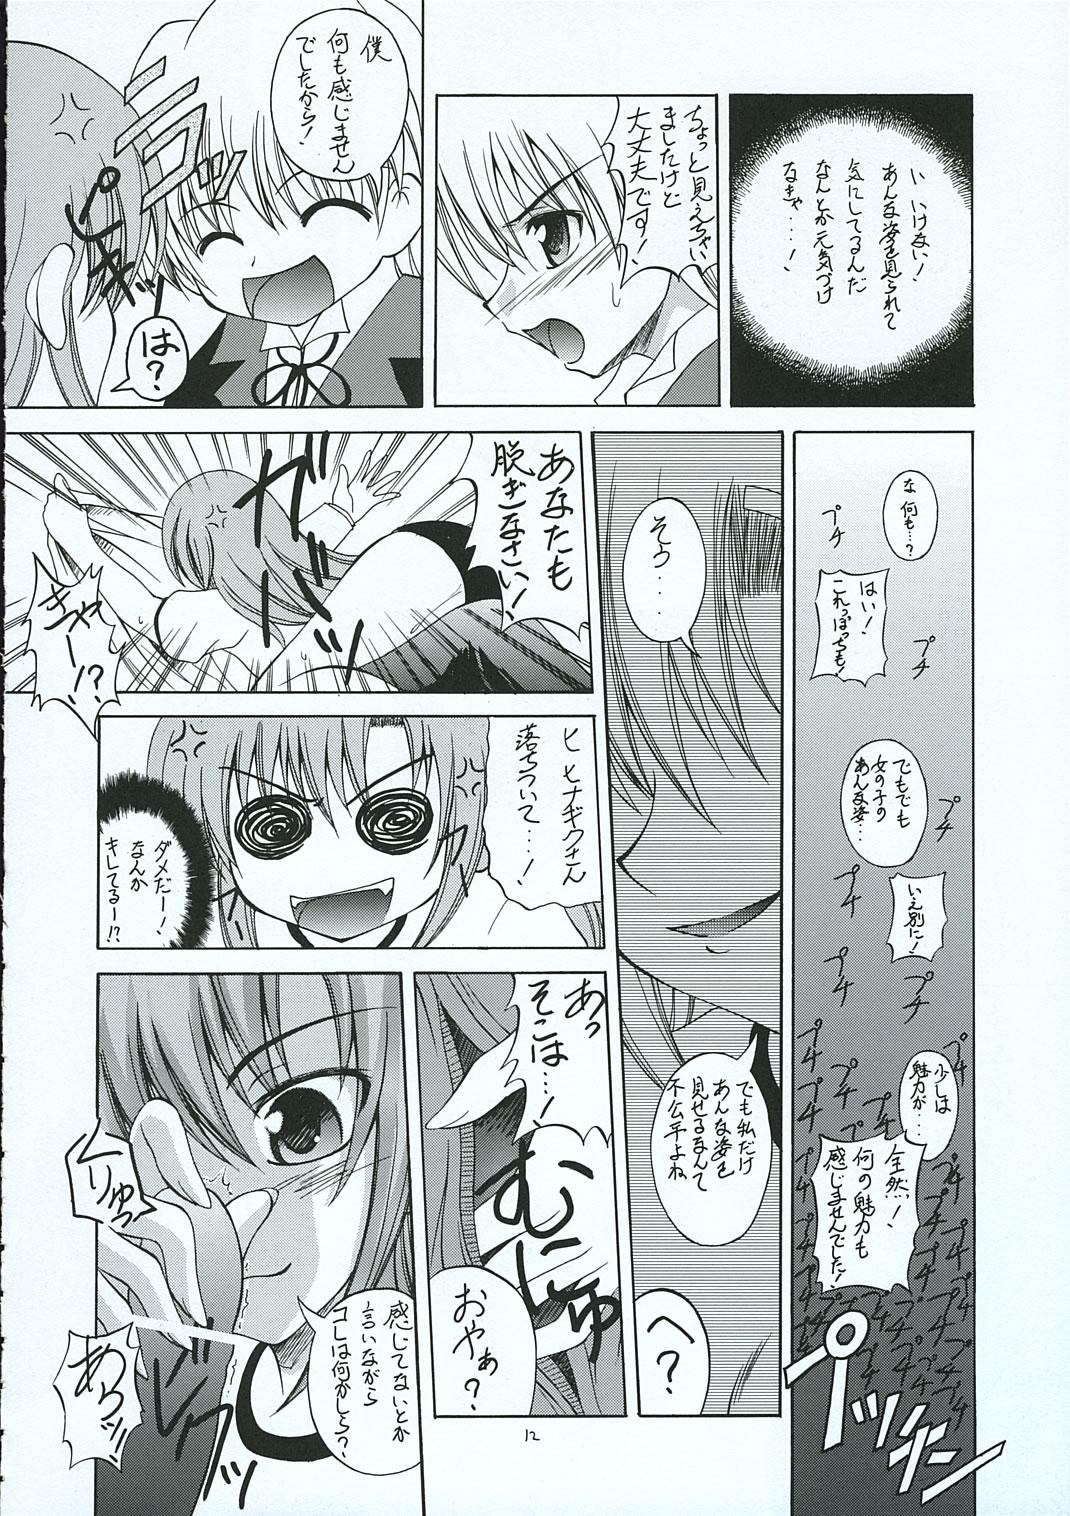 Cameltoe Hayate no Gotoshi!? 3 Event Haifuban - Hayate no gotoku Hardfuck - Page 11